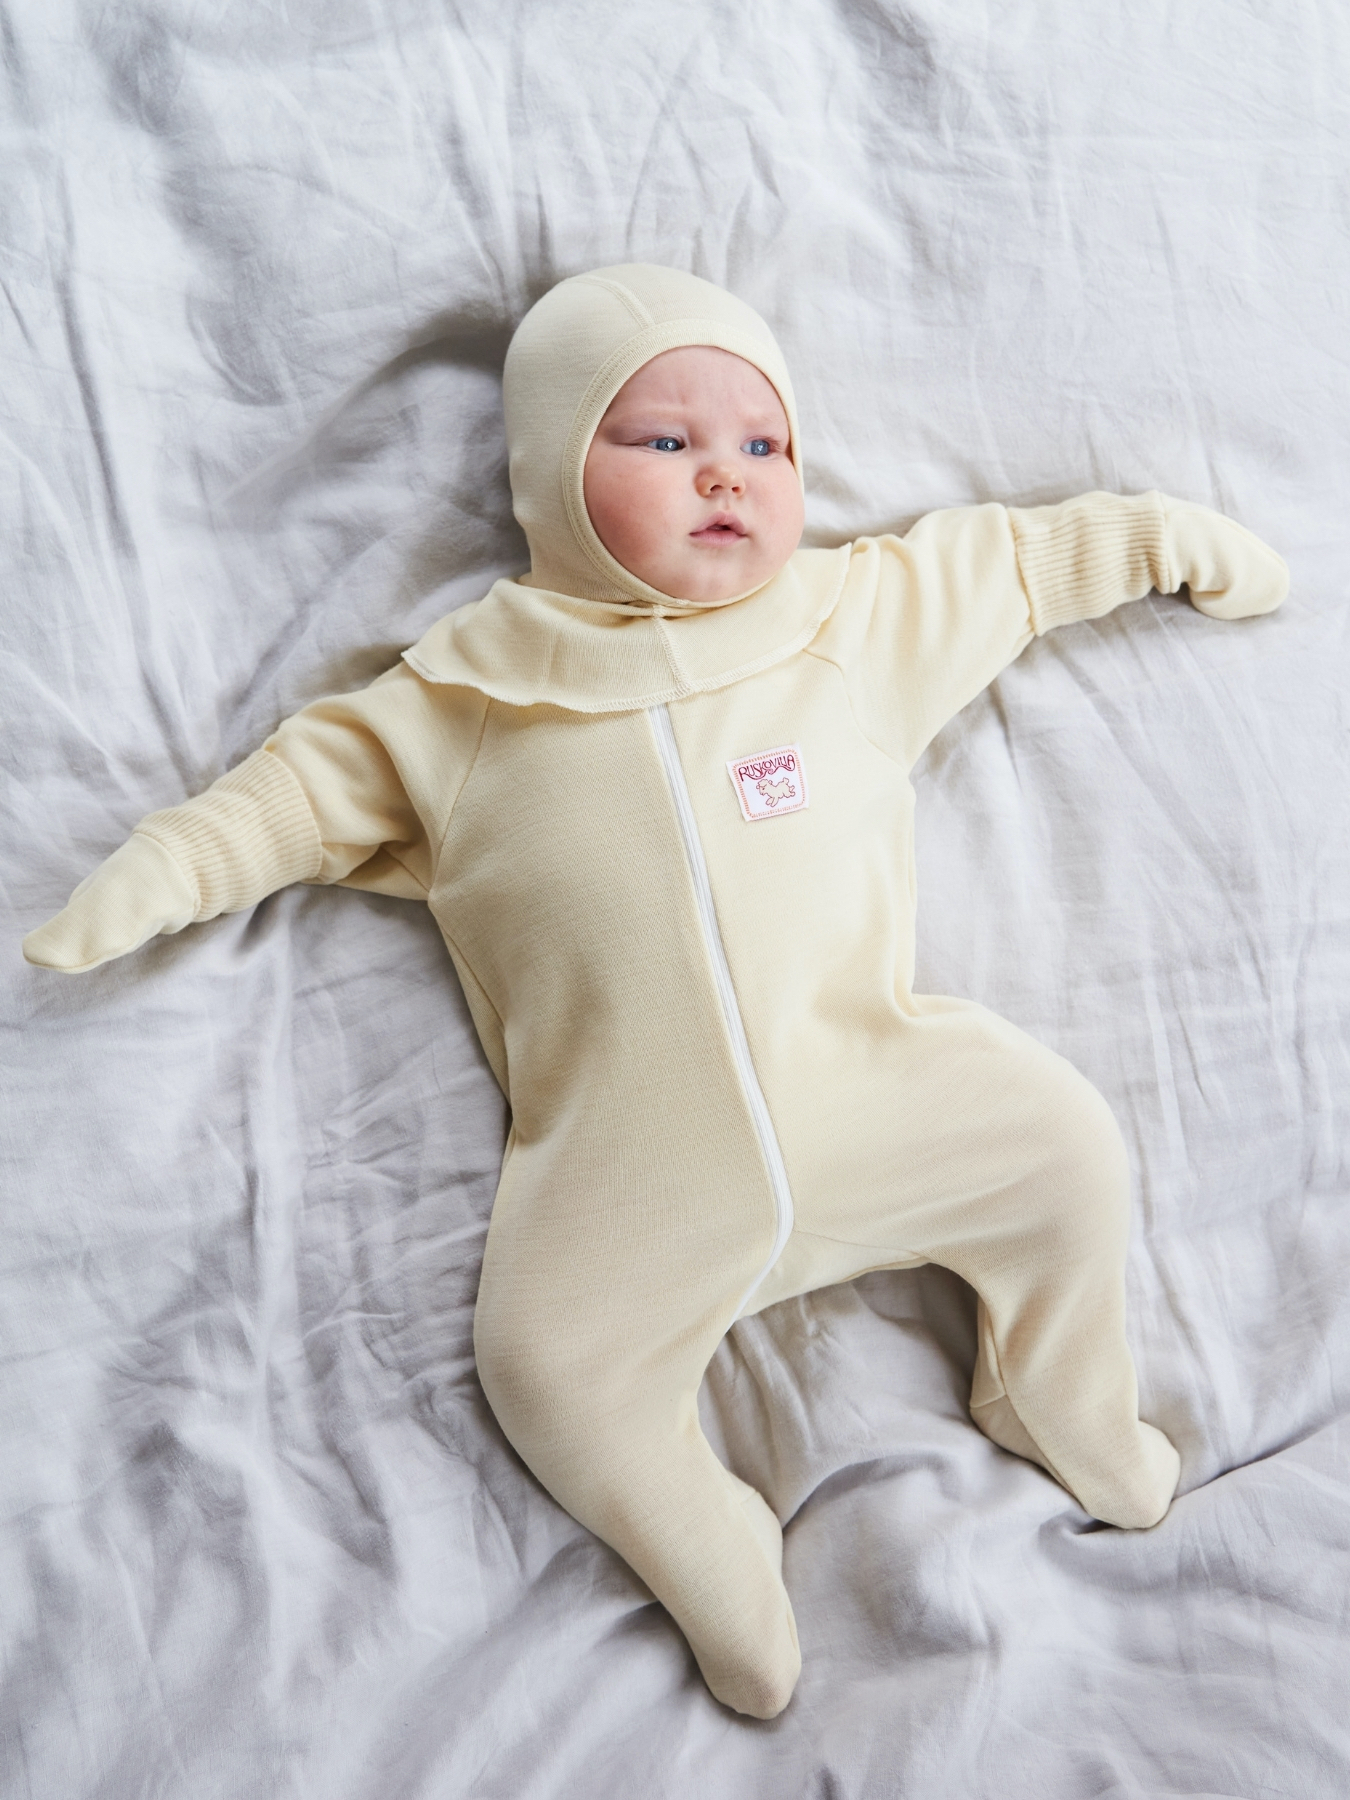 Ruskovilla's baby organic merino wool overall in white